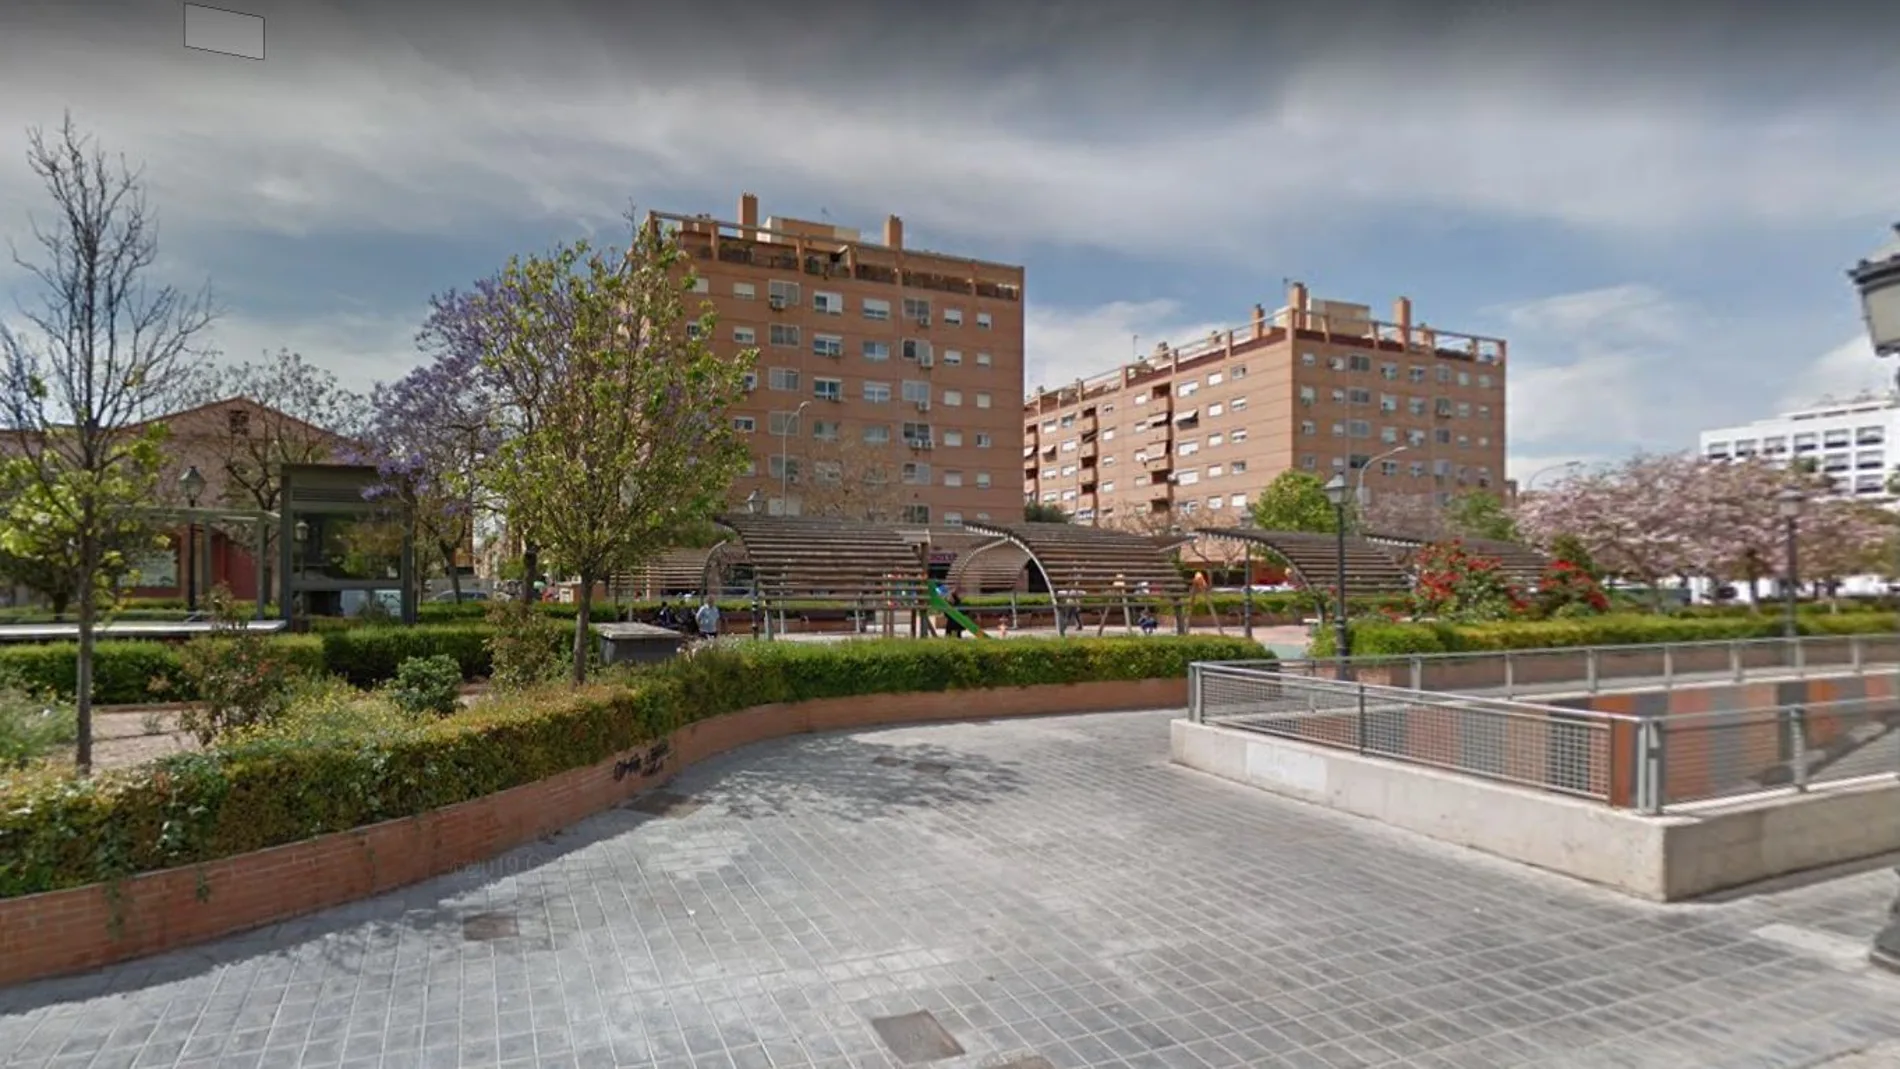 El indigente fue asesinado en la plaza Martí Grajales de Valencia